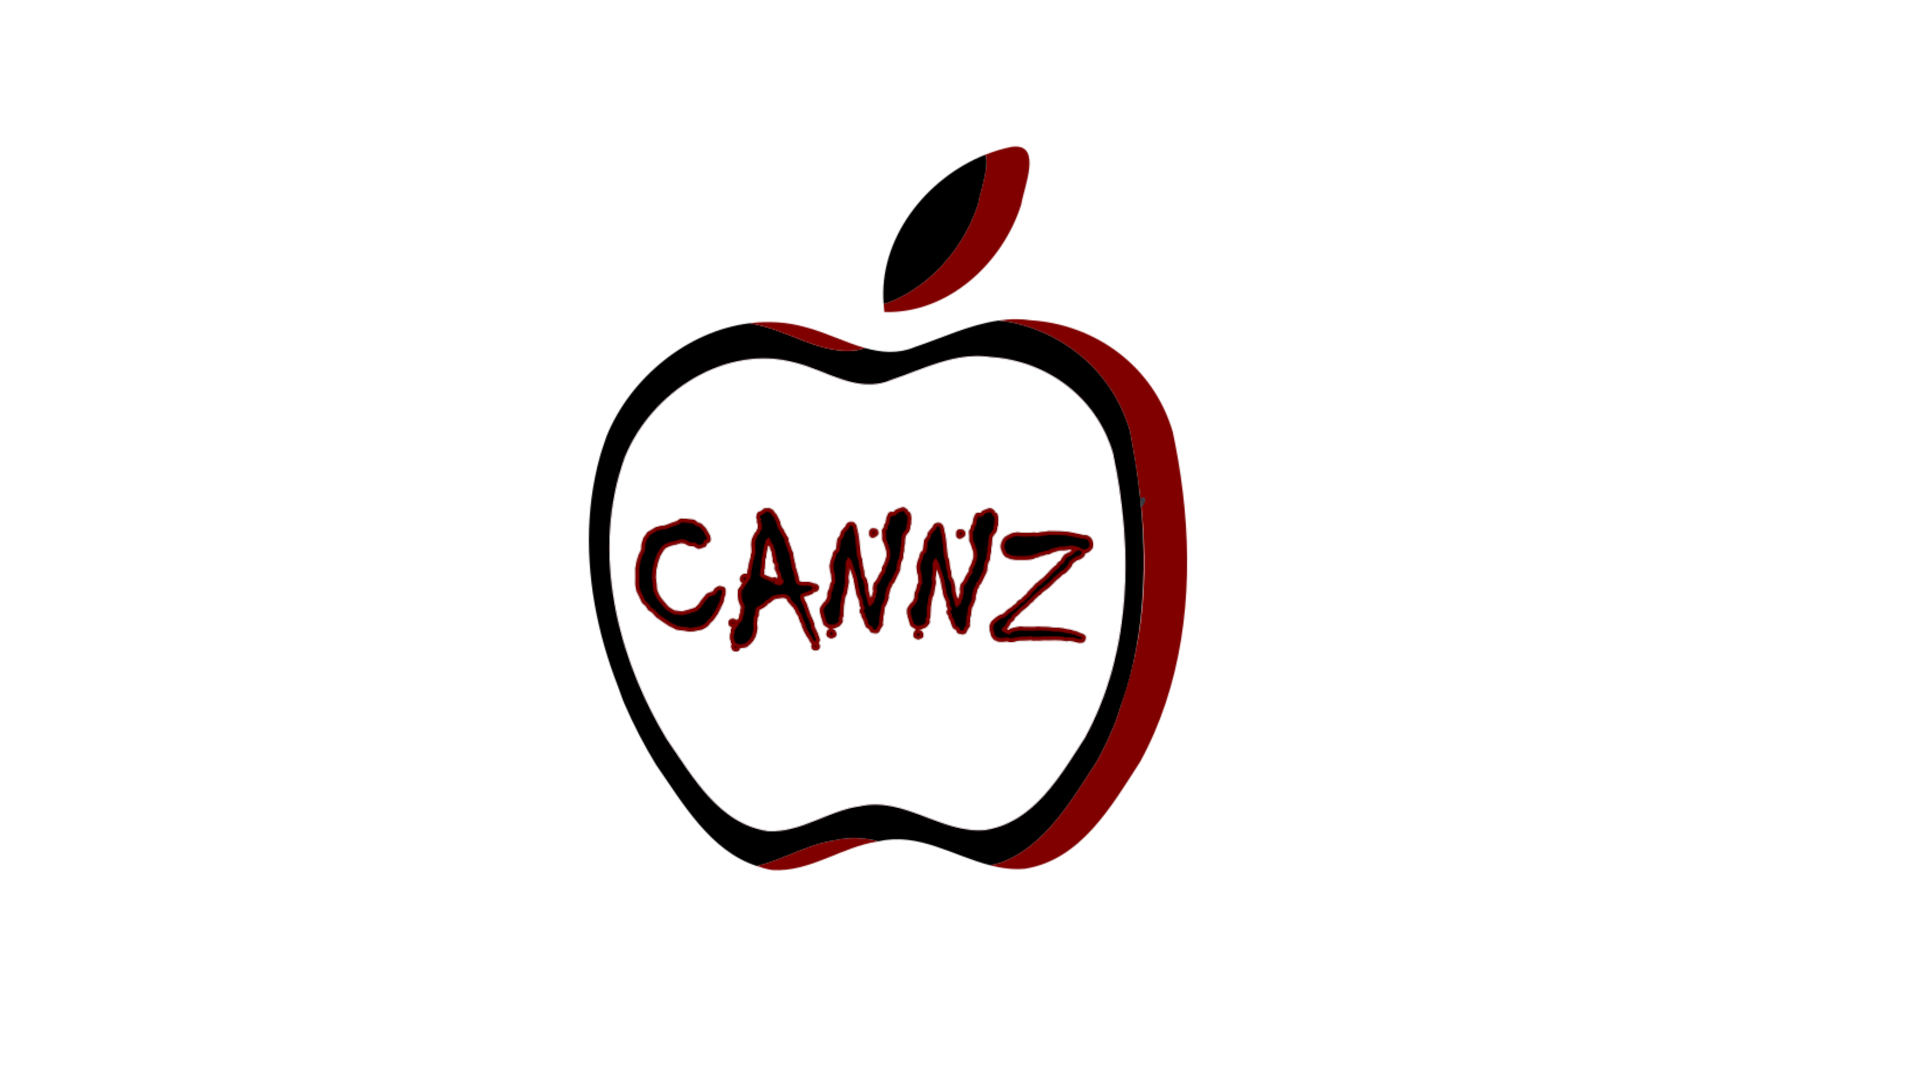 Ian Apple Cannz